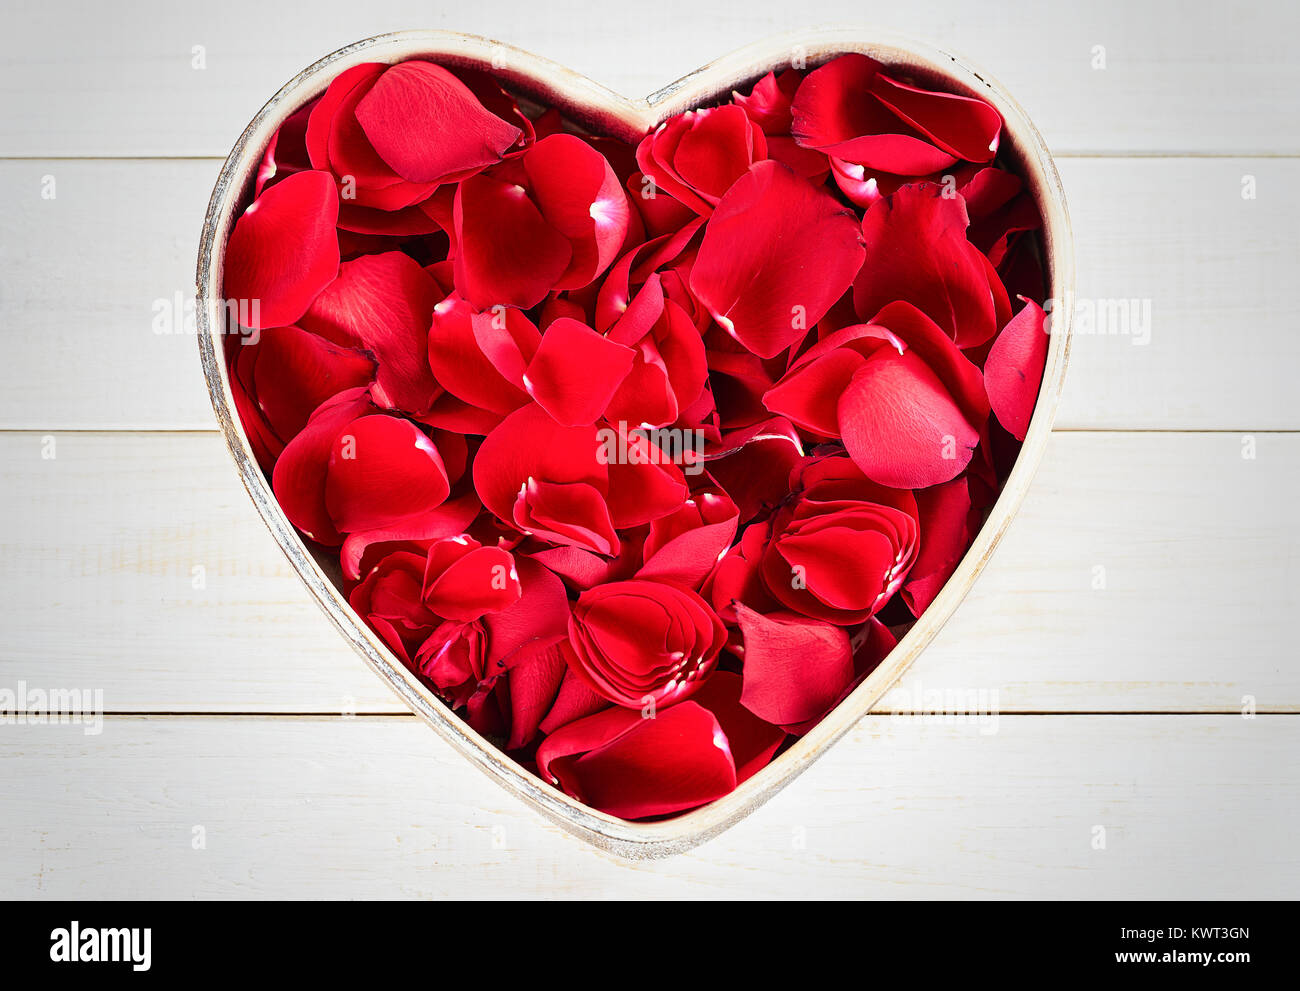 Petali di colore rosso a forma di cuore il vassoio Foto Stock